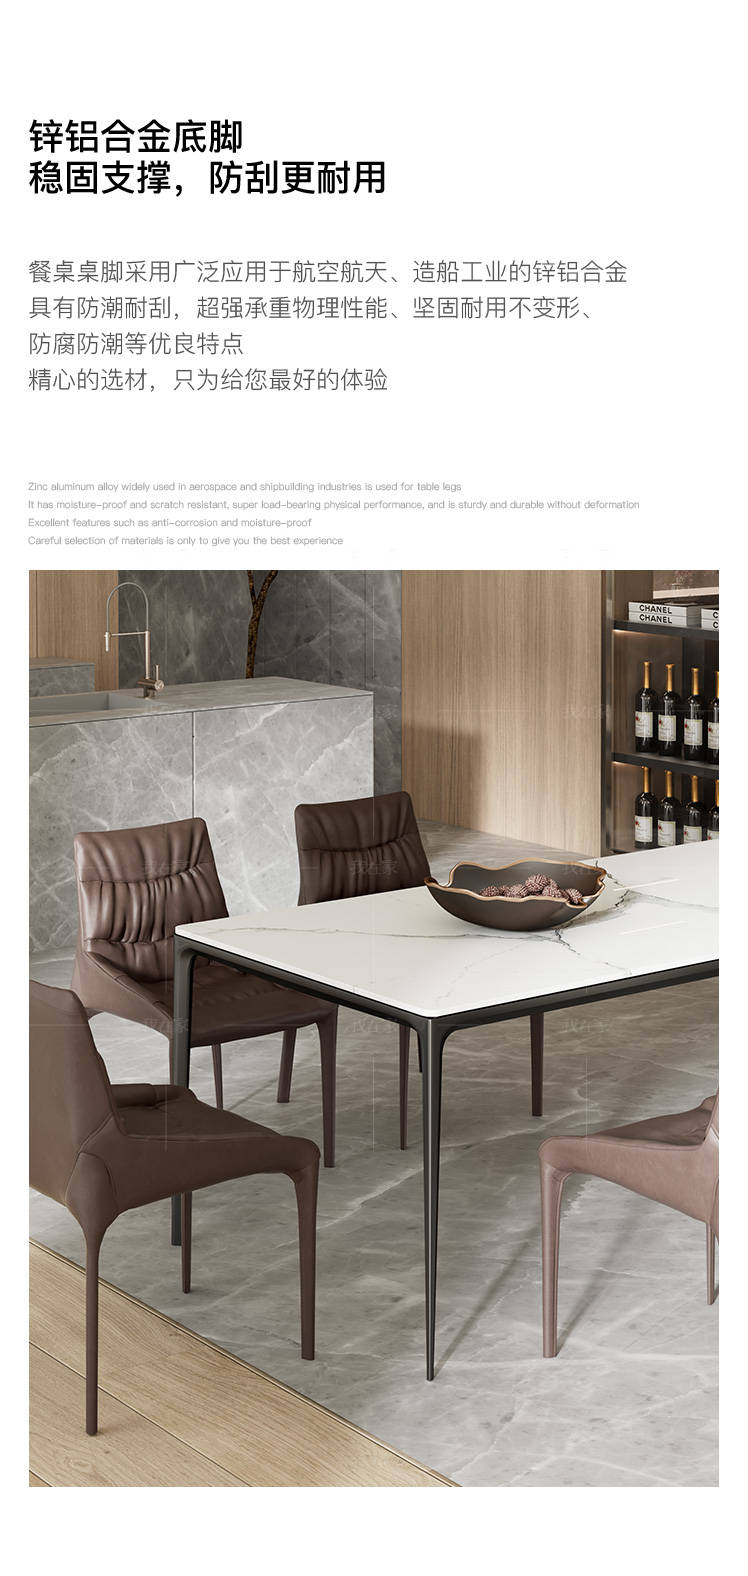 意式极简风格高斯餐桌的家具详细介绍